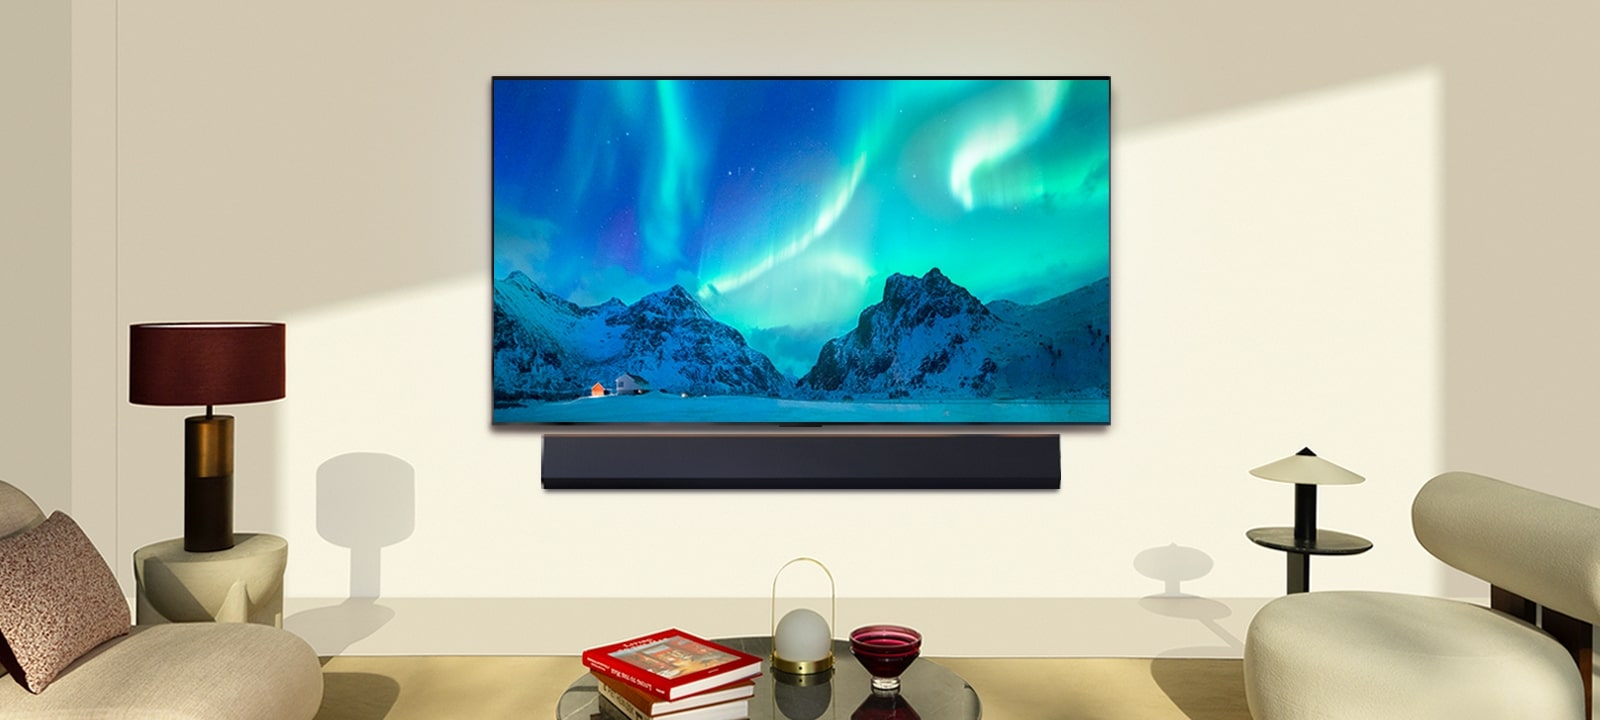 LG OLED TV en LG Soundbar in een moderne woonruimte overdag. Een schermafbeelding van aurora borealis wordt weergegeven met het ideale helderheidsniveau.